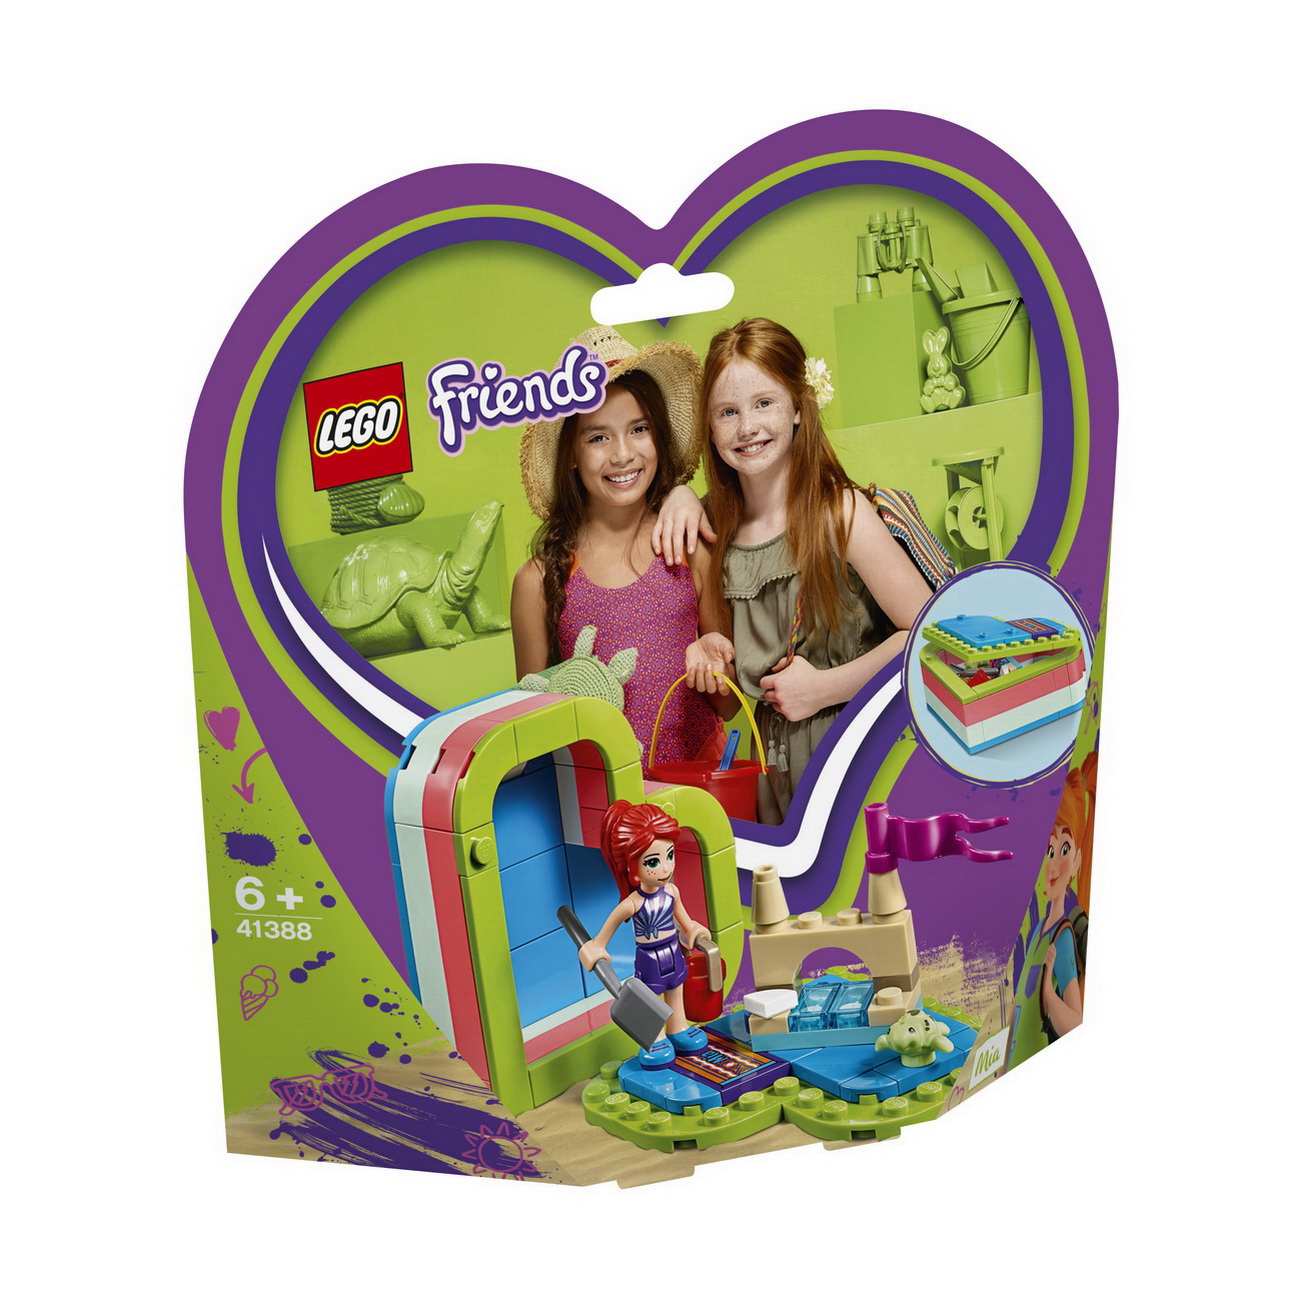 LEGO Friends (41388) Mias sommerliche Herzbox